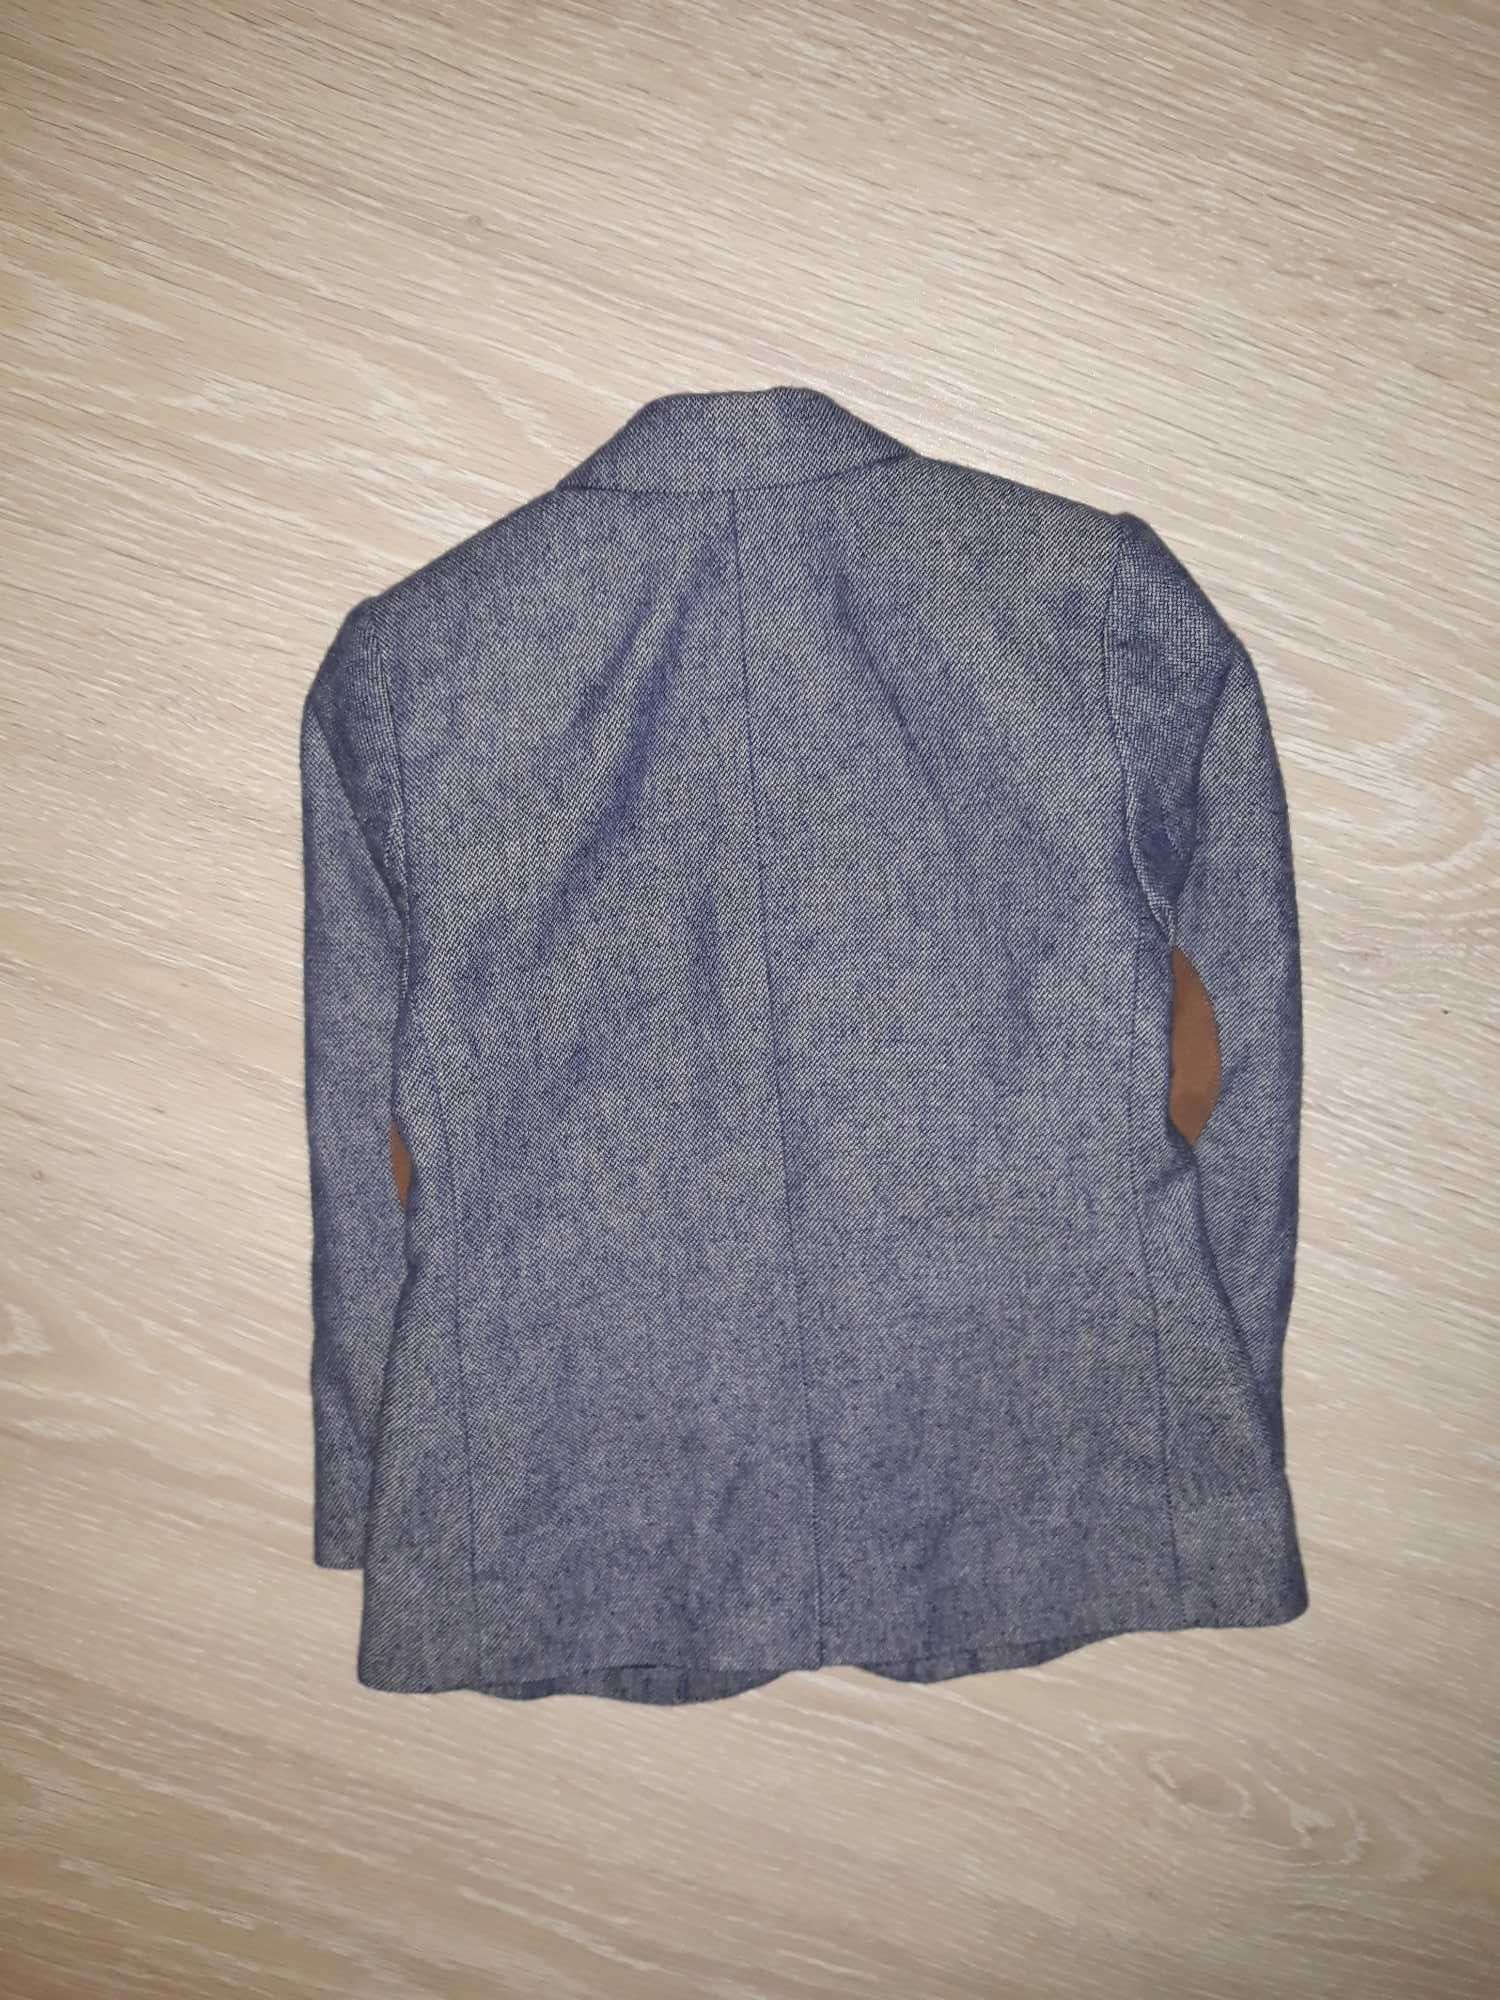 Піджак, блейзер H&M на 1,5-2,0 роки